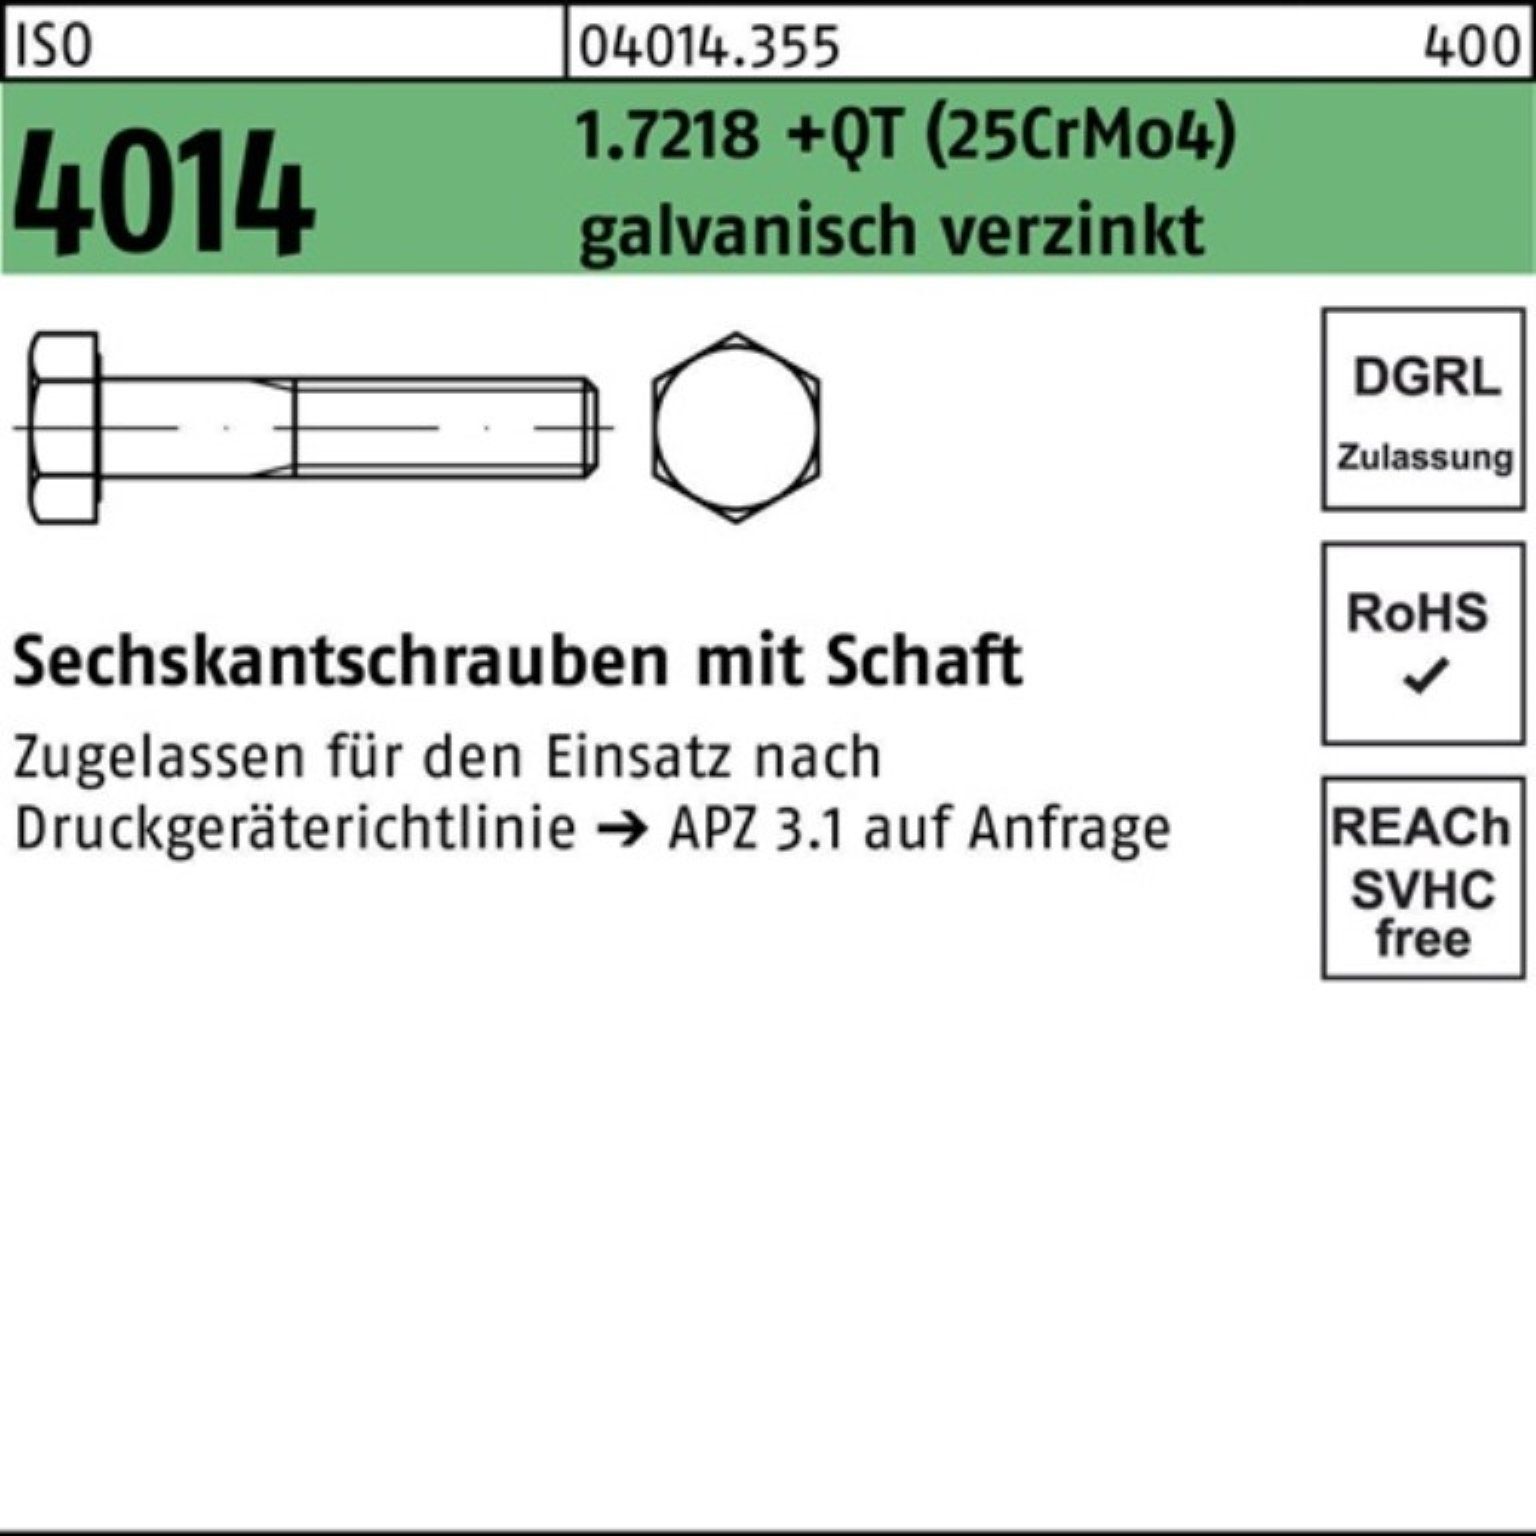 Sechskantschraube 1.7218 4014 (25CrM Pack +QT M36x160 Bufab Schaft 100er Sechskantschraube ISO